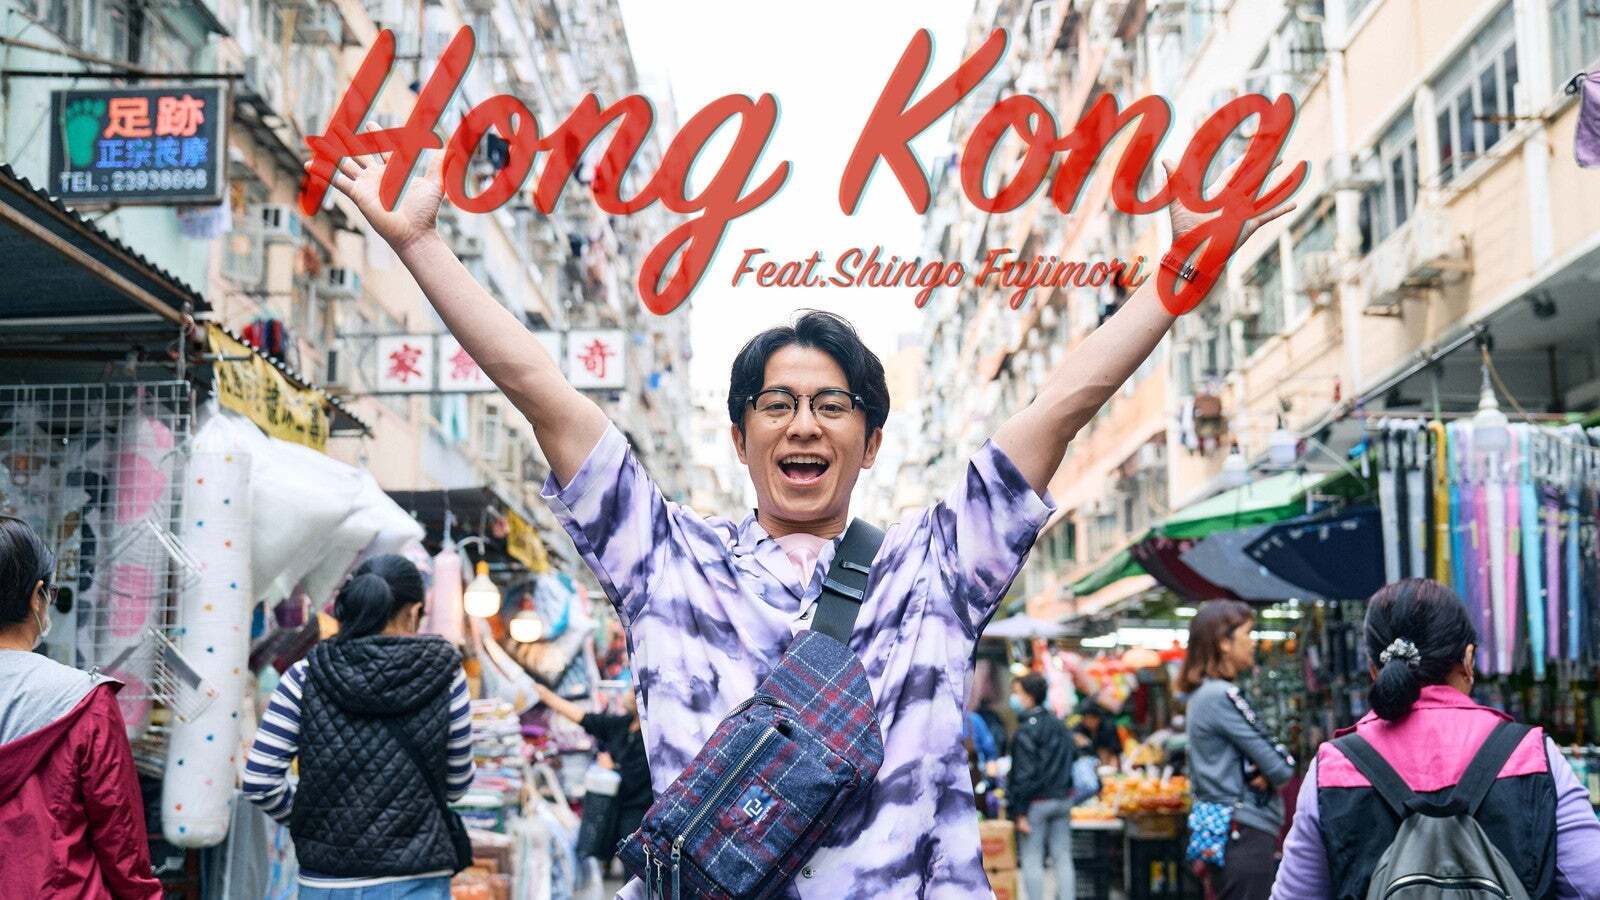 “Hong Kong feat. 藤森慎吾”